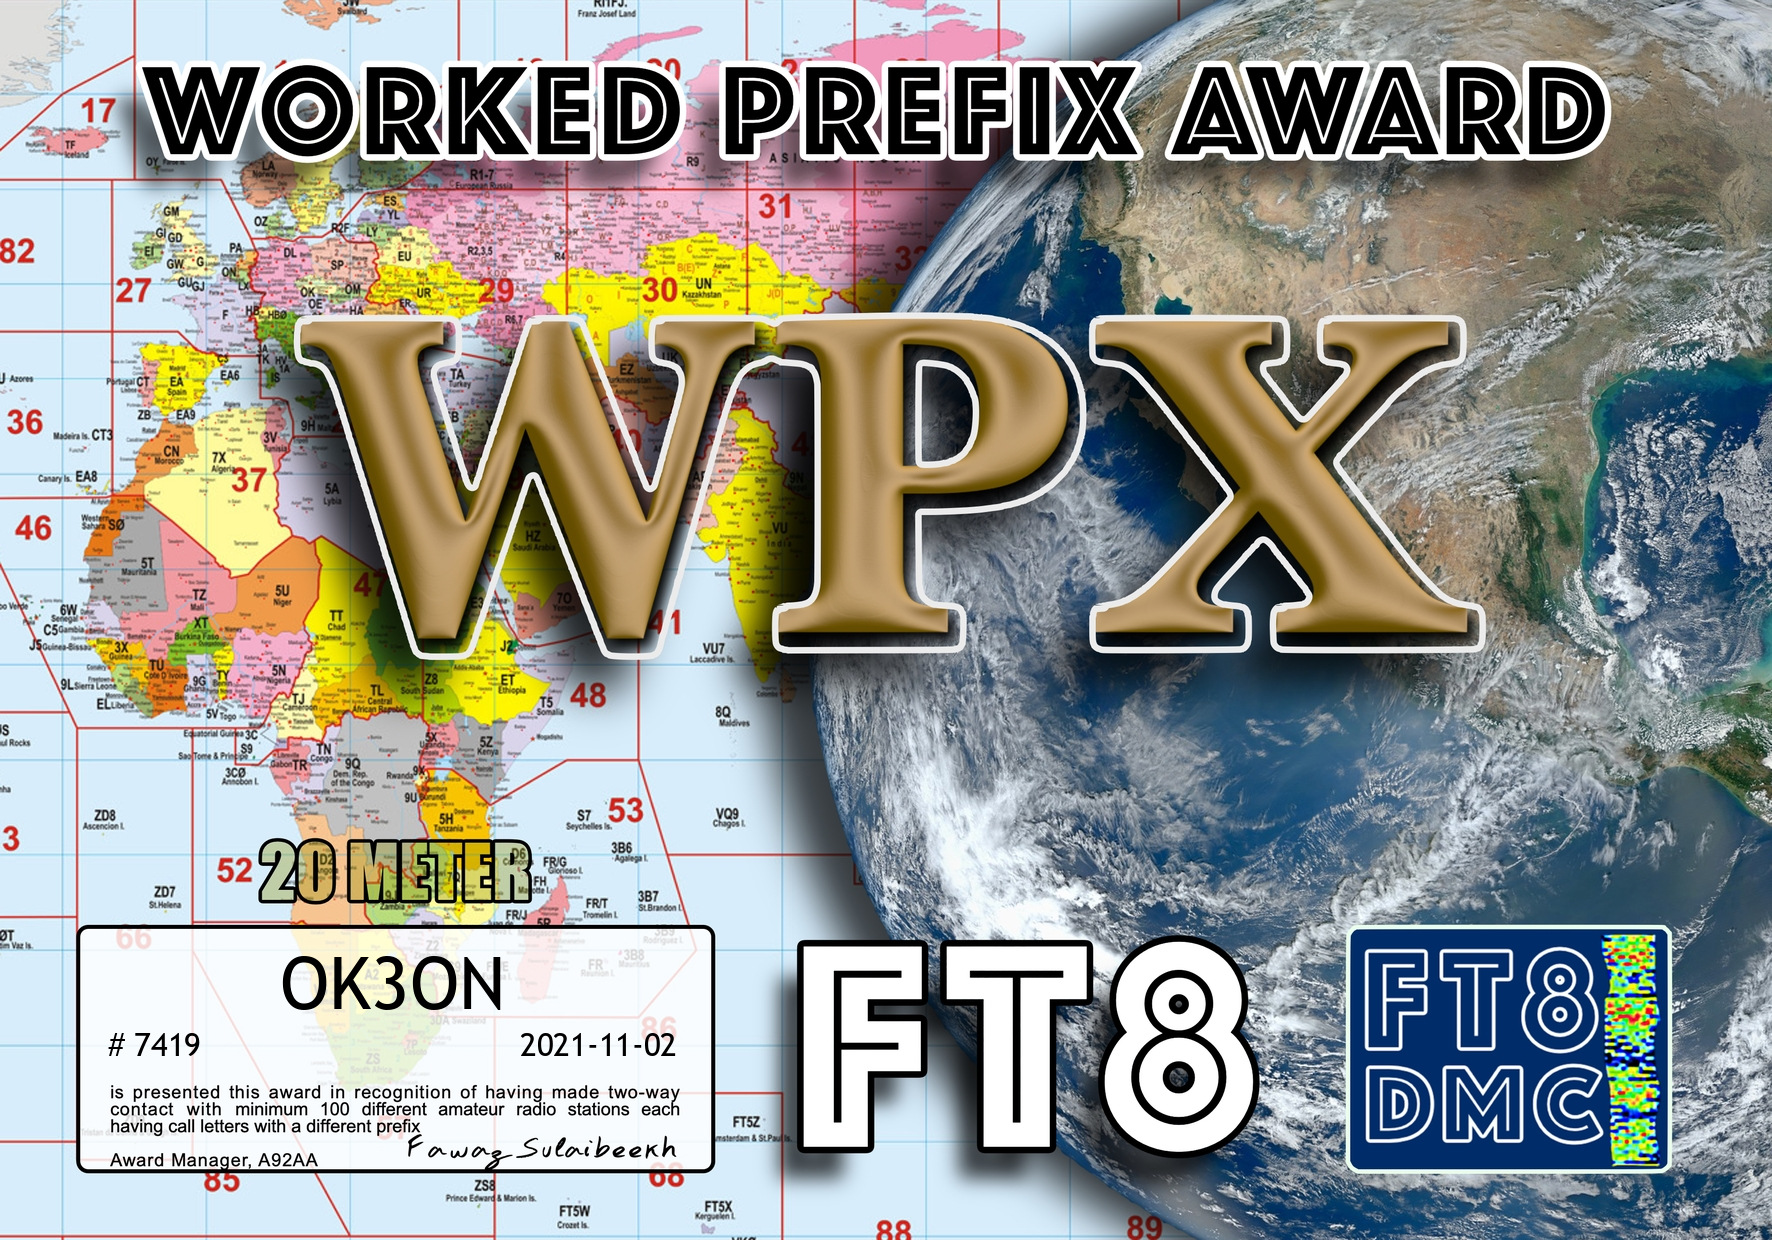 awards/OK3ON-WPX20-100_FT8DMC.jpg